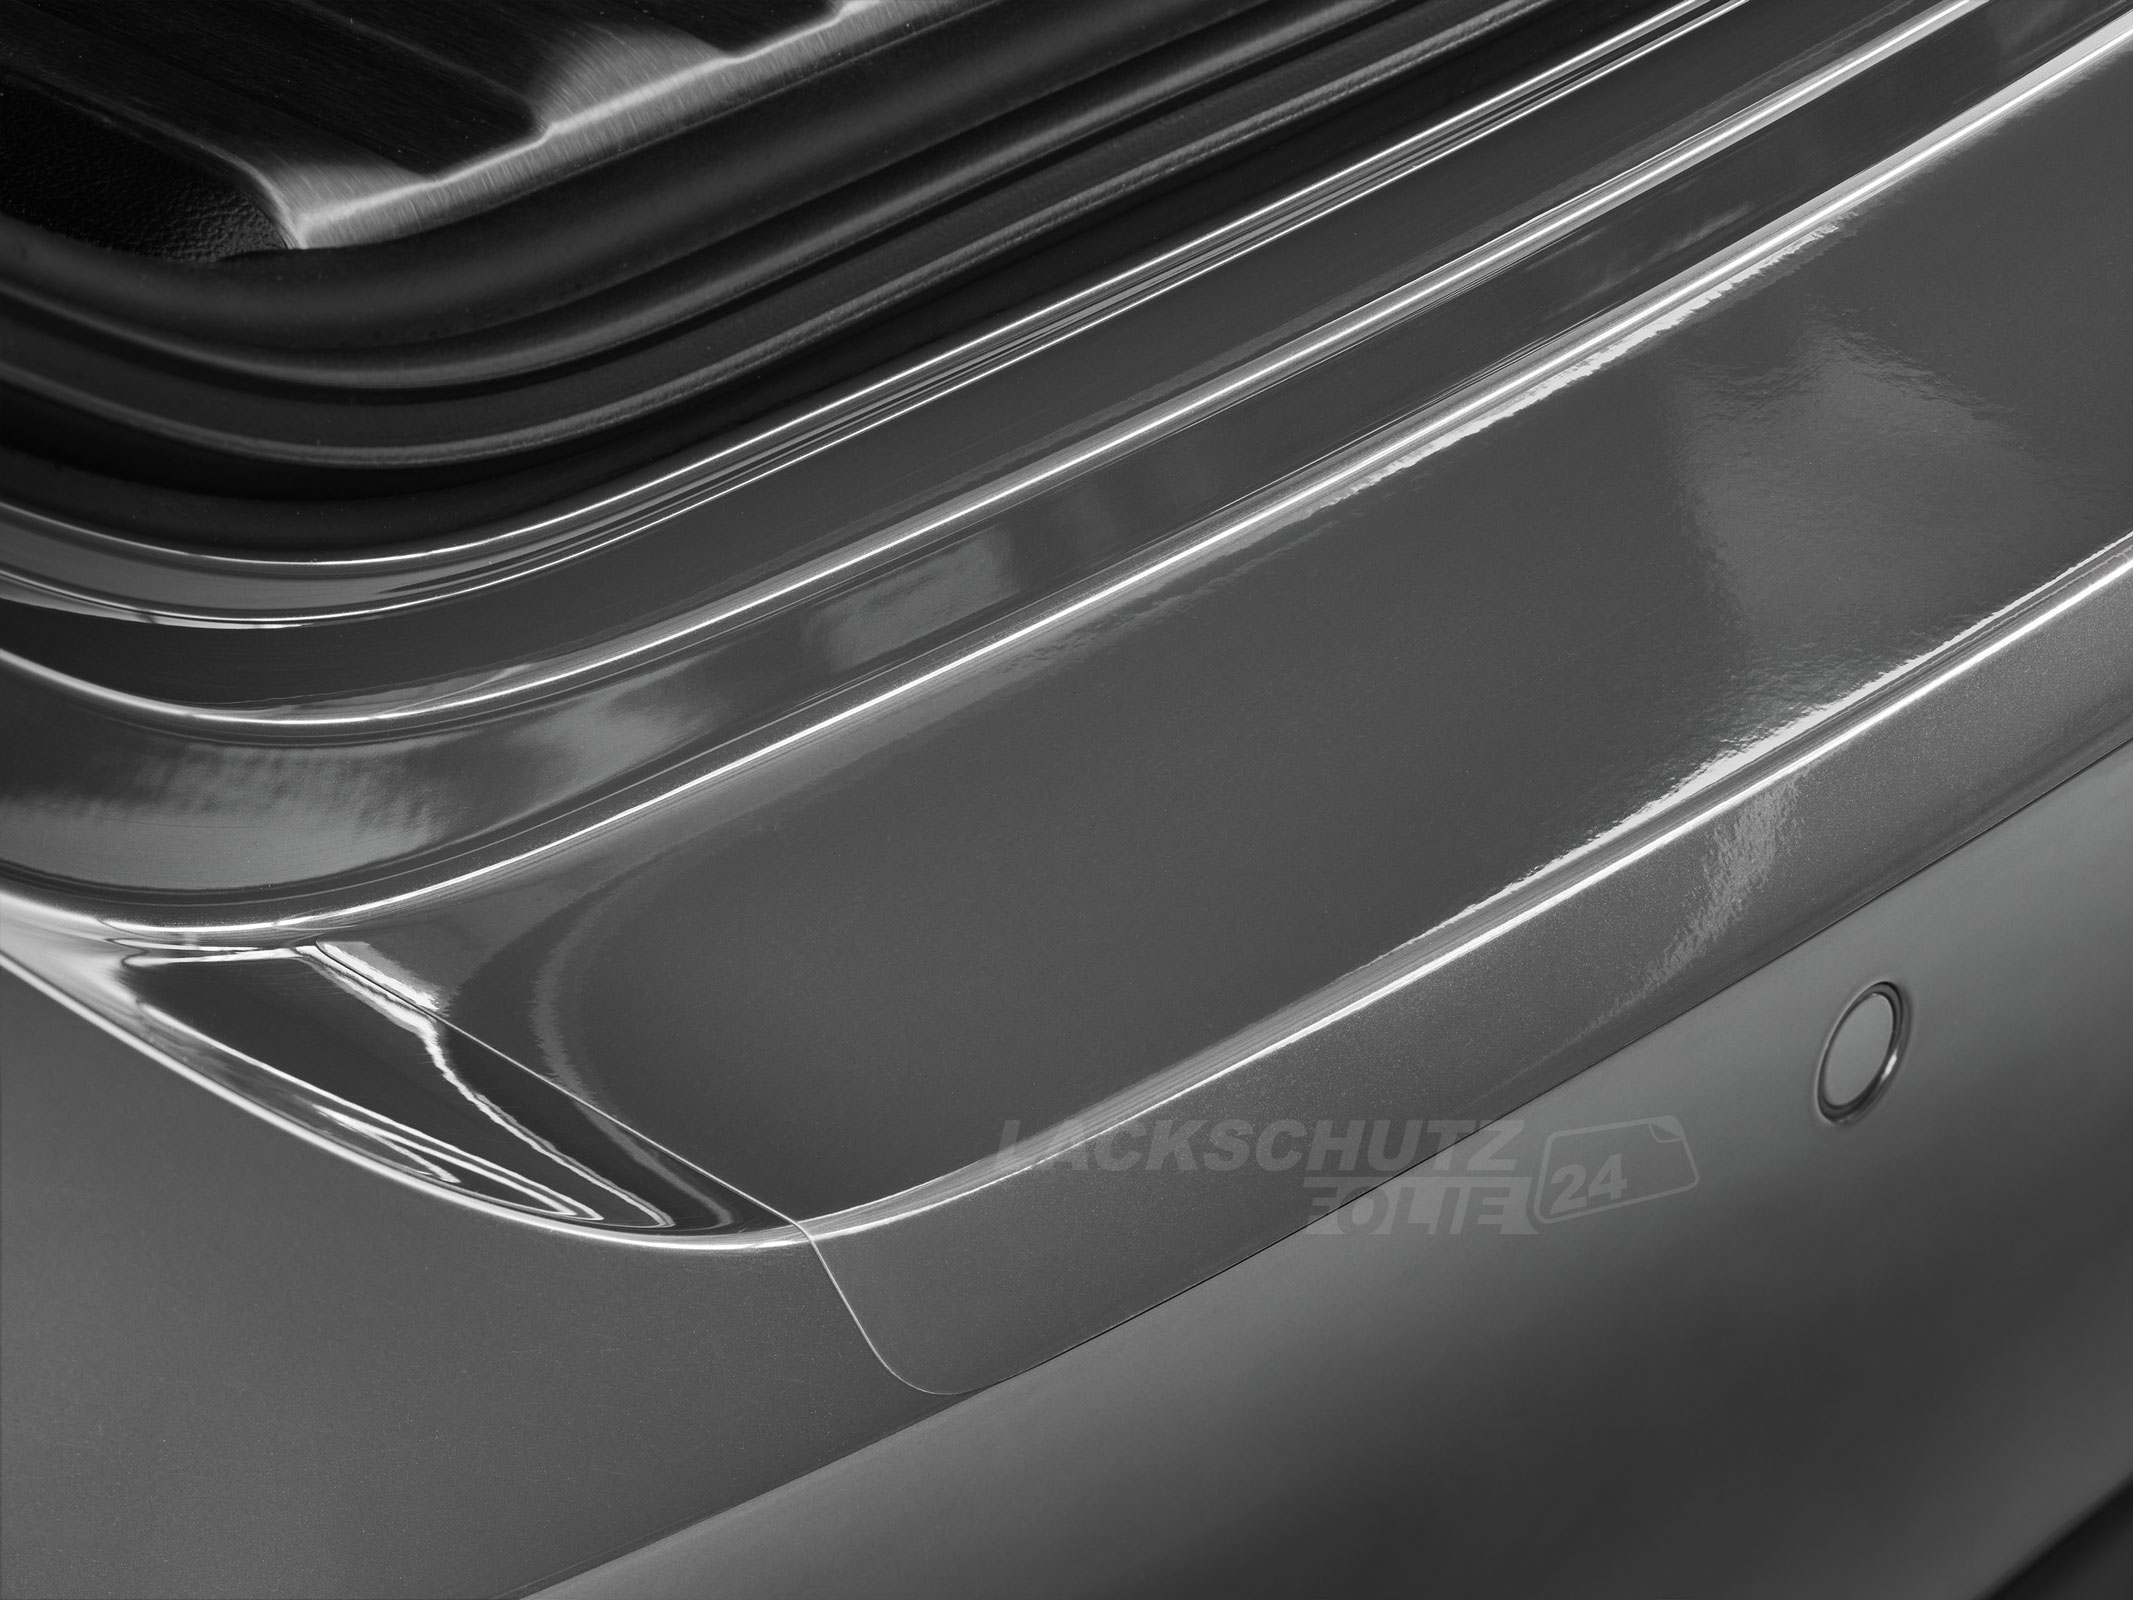 Ladekantenschutzfolie - Transparent Glatt Hochglänzend 150 µm stark für VW / Volkswagen Passat Limousine B6, Typ 3C, BJ 2005-2010